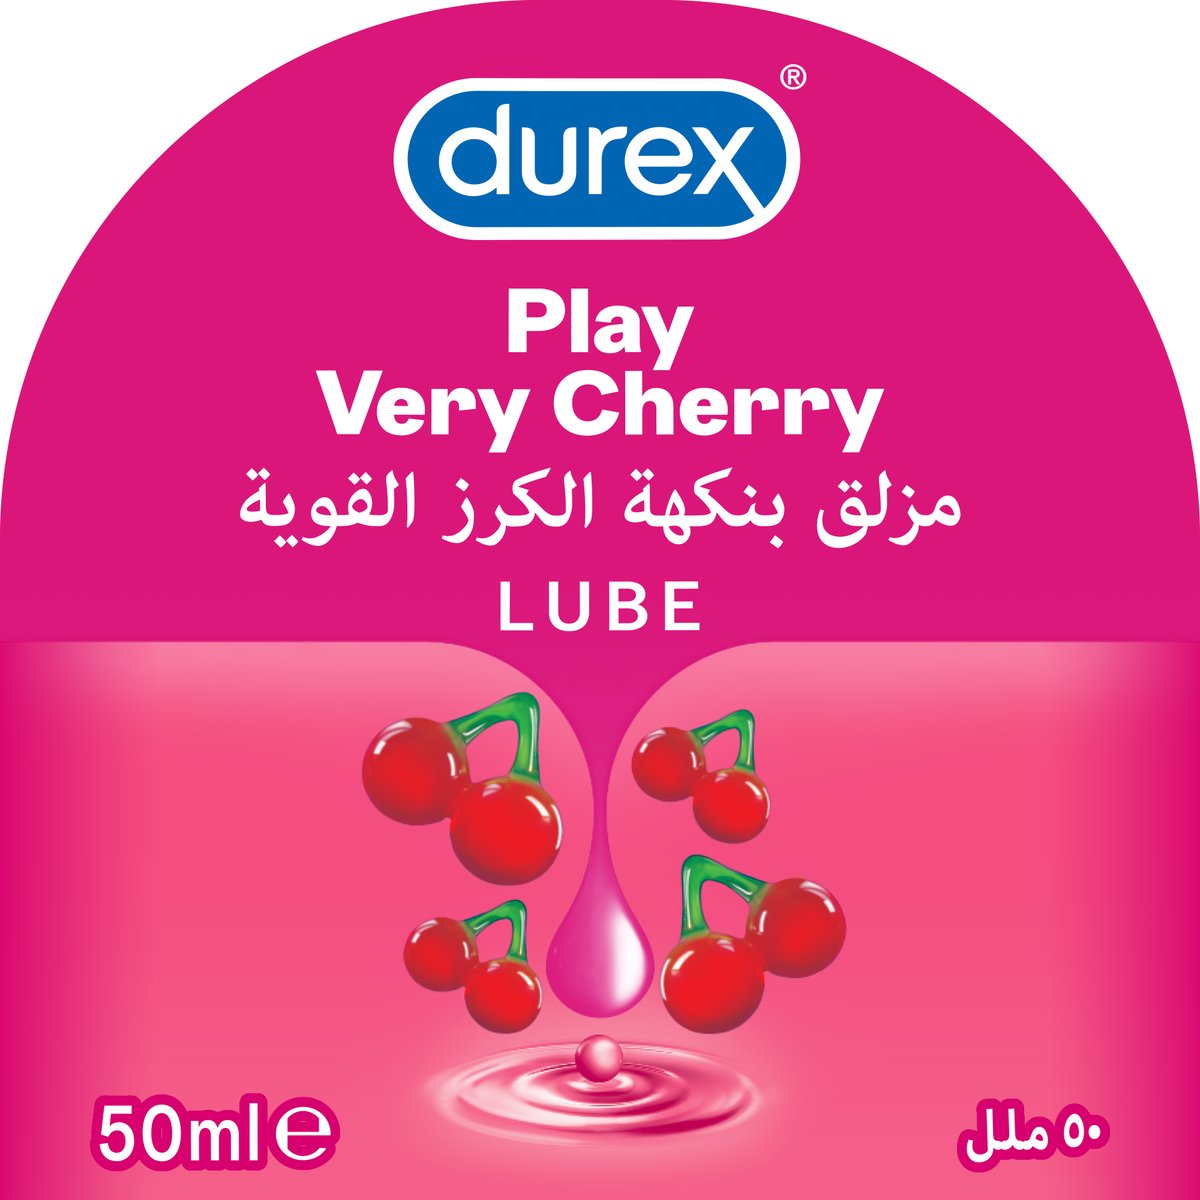 Durex Play Very Cherry Lube 50ml